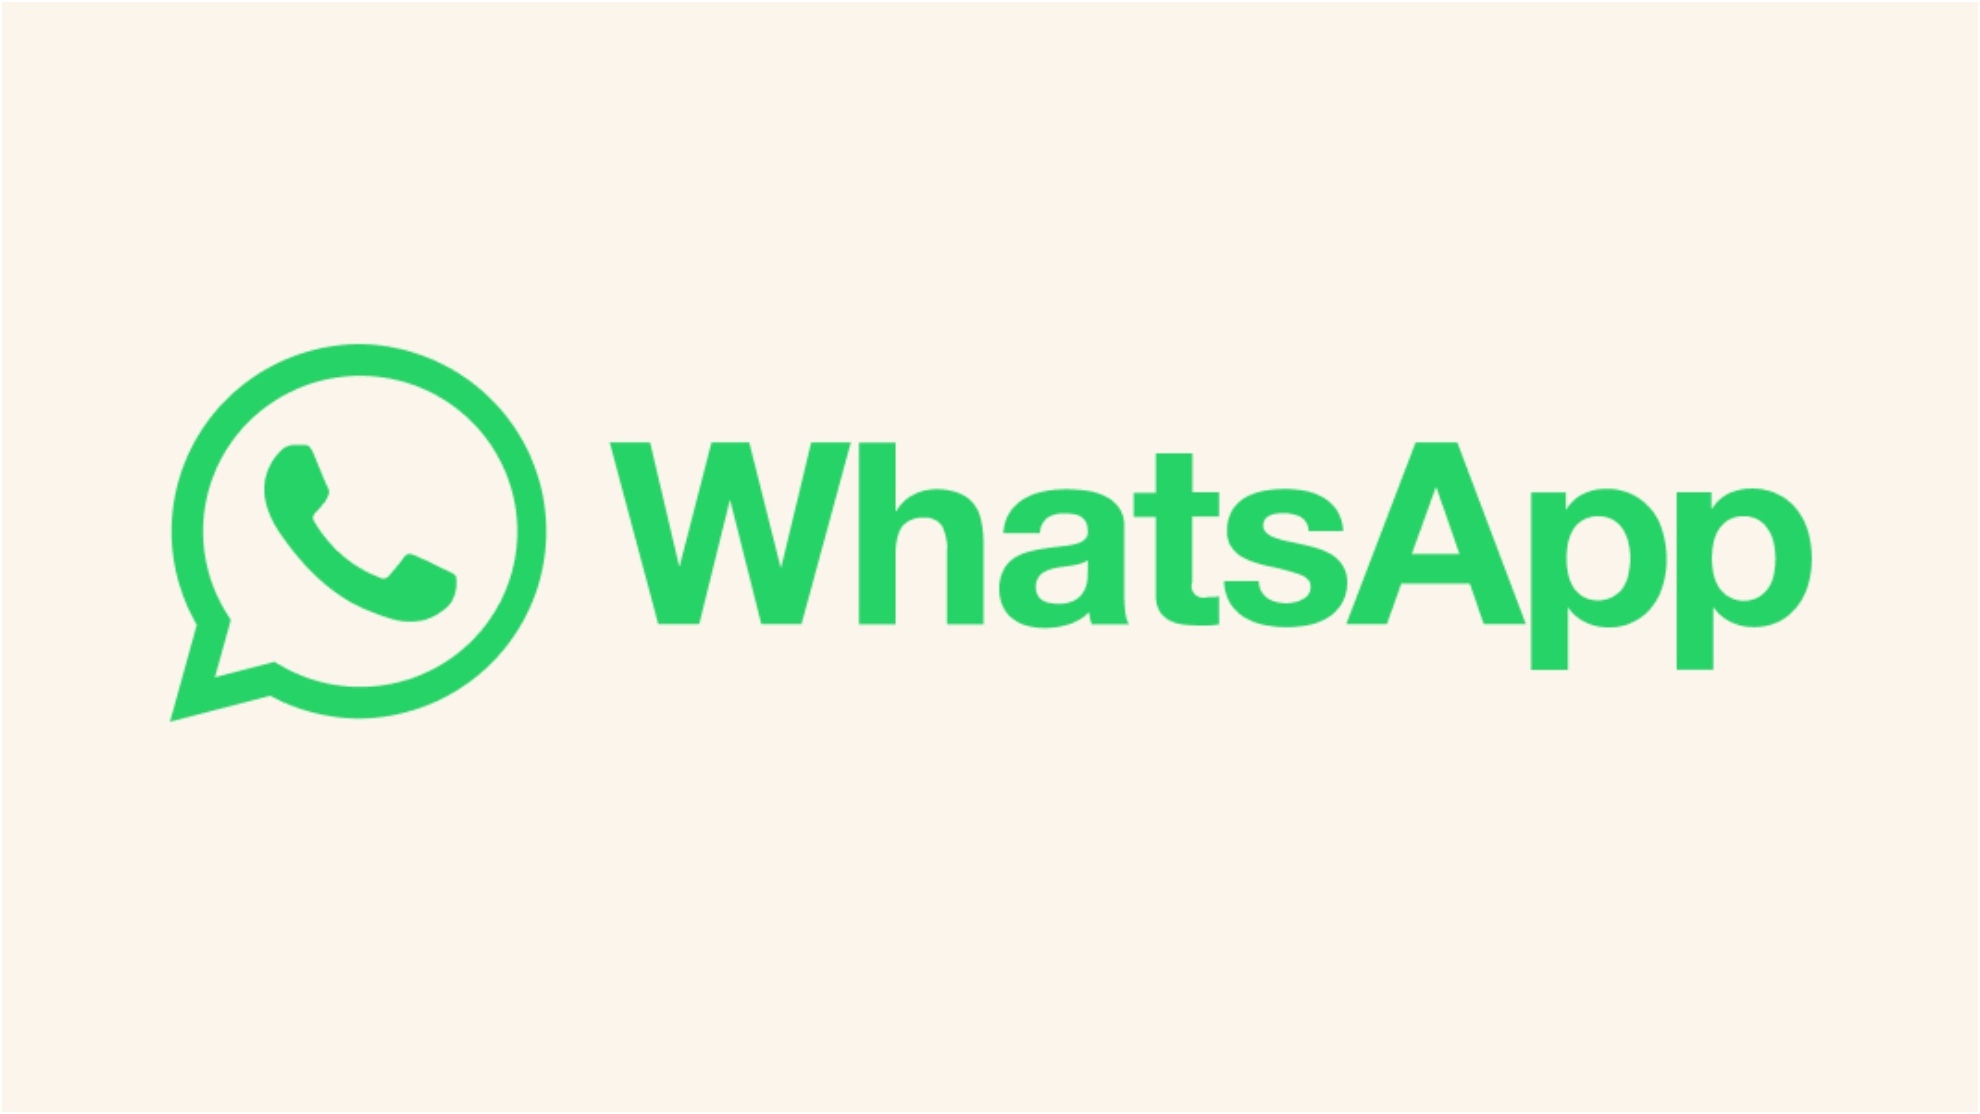 Modo espía de WhatsApp: ¿Qué es, cómo se activa y para qué sirve?